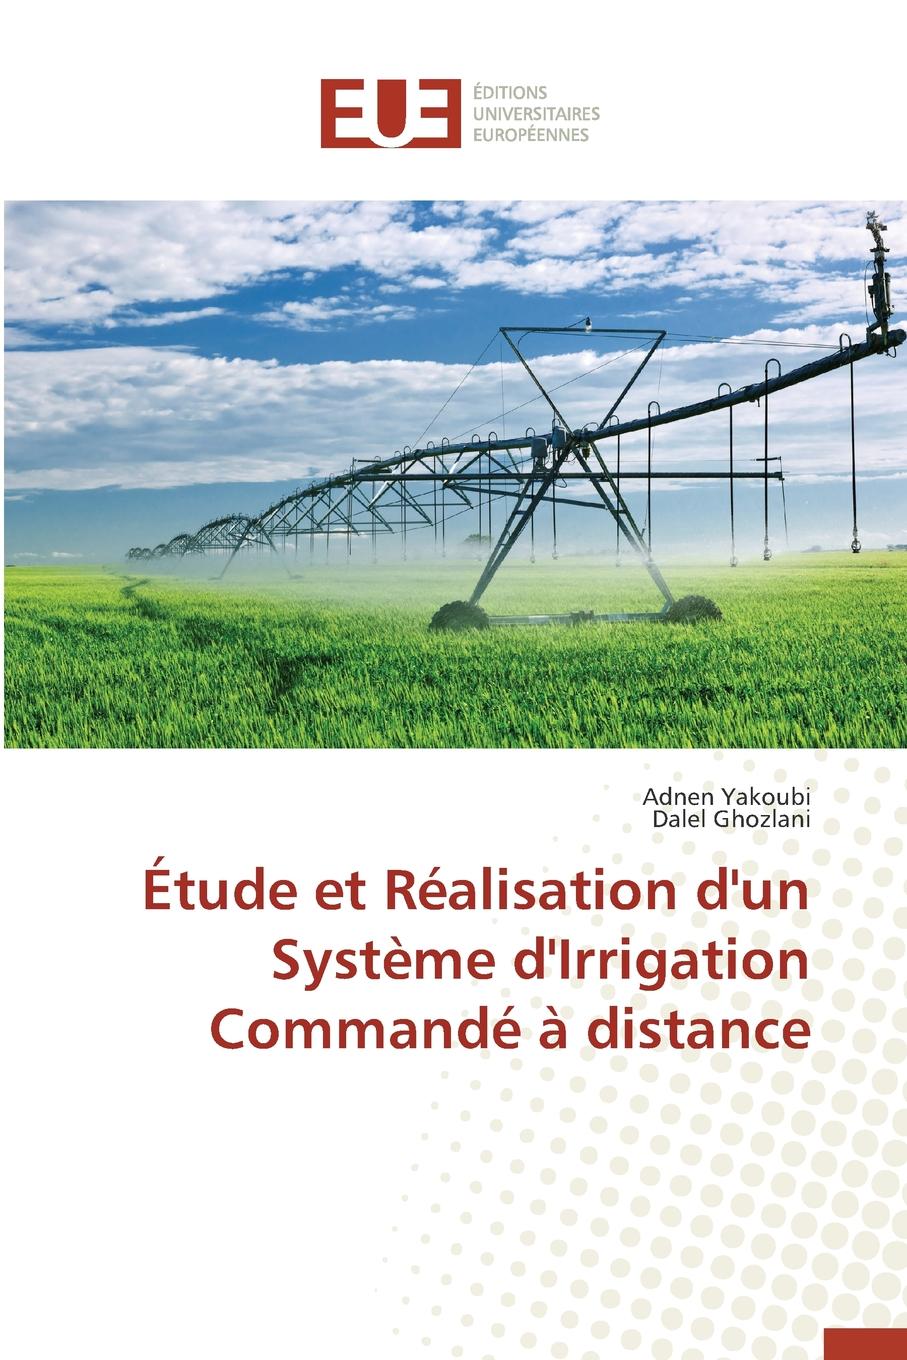 Etude et realisation d.un systeme d.irrigation commande a distance